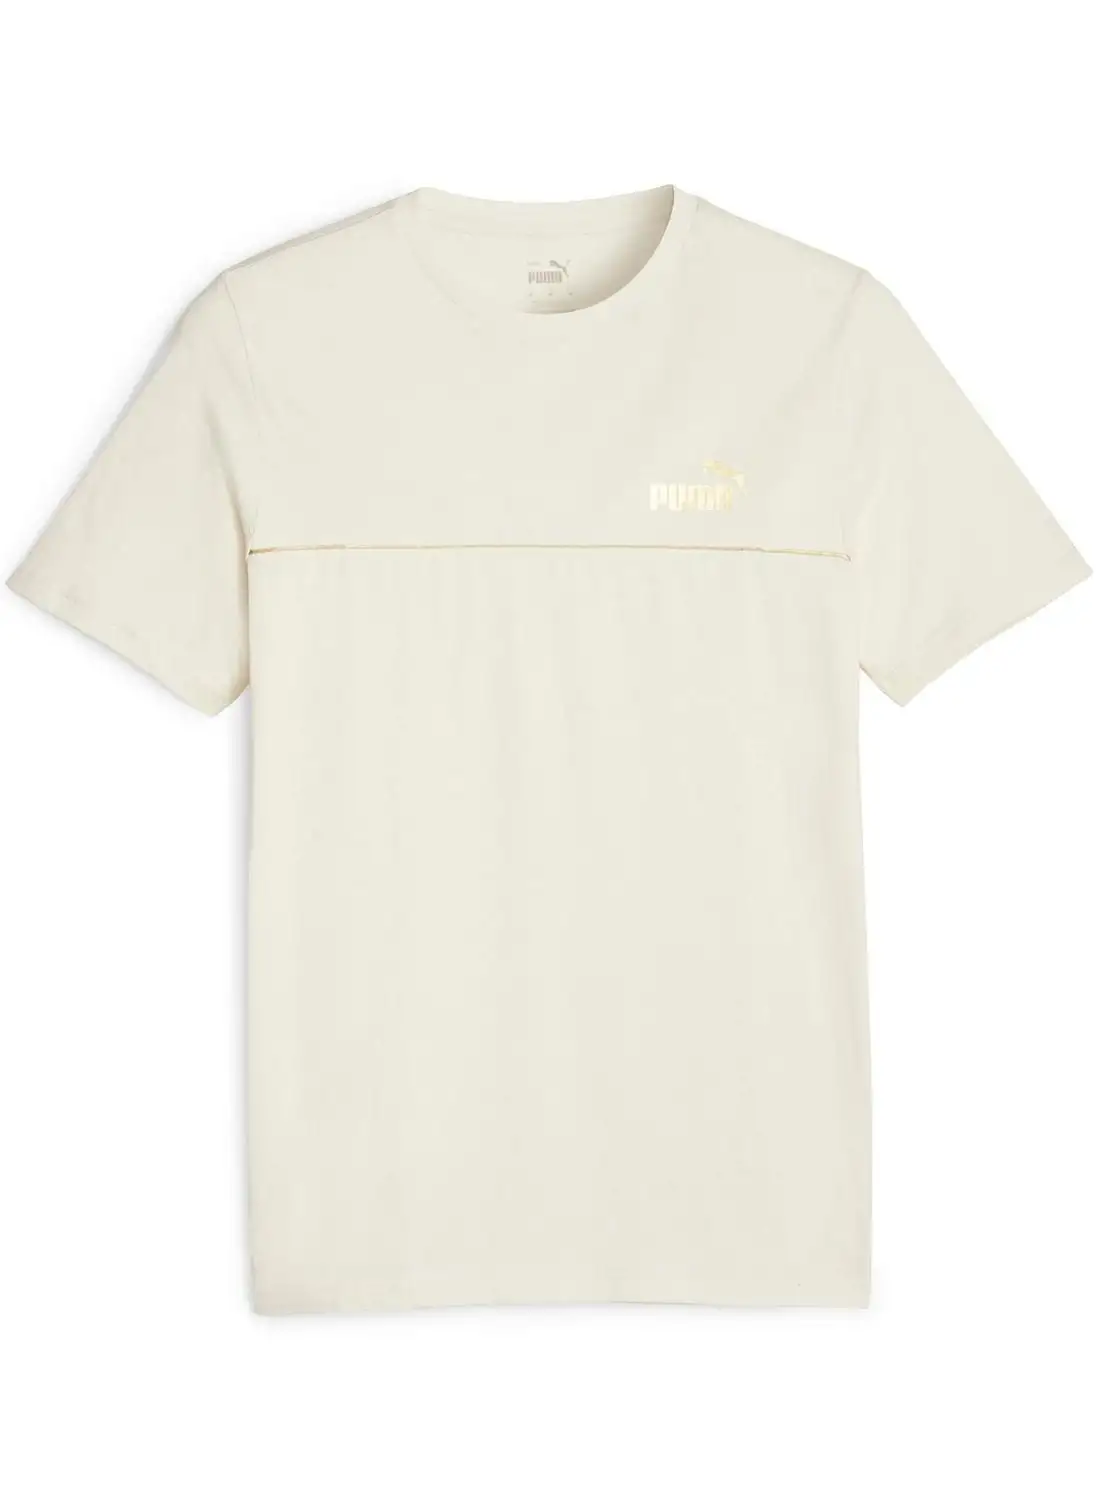 PUMA Minimal Gold T-Shirt